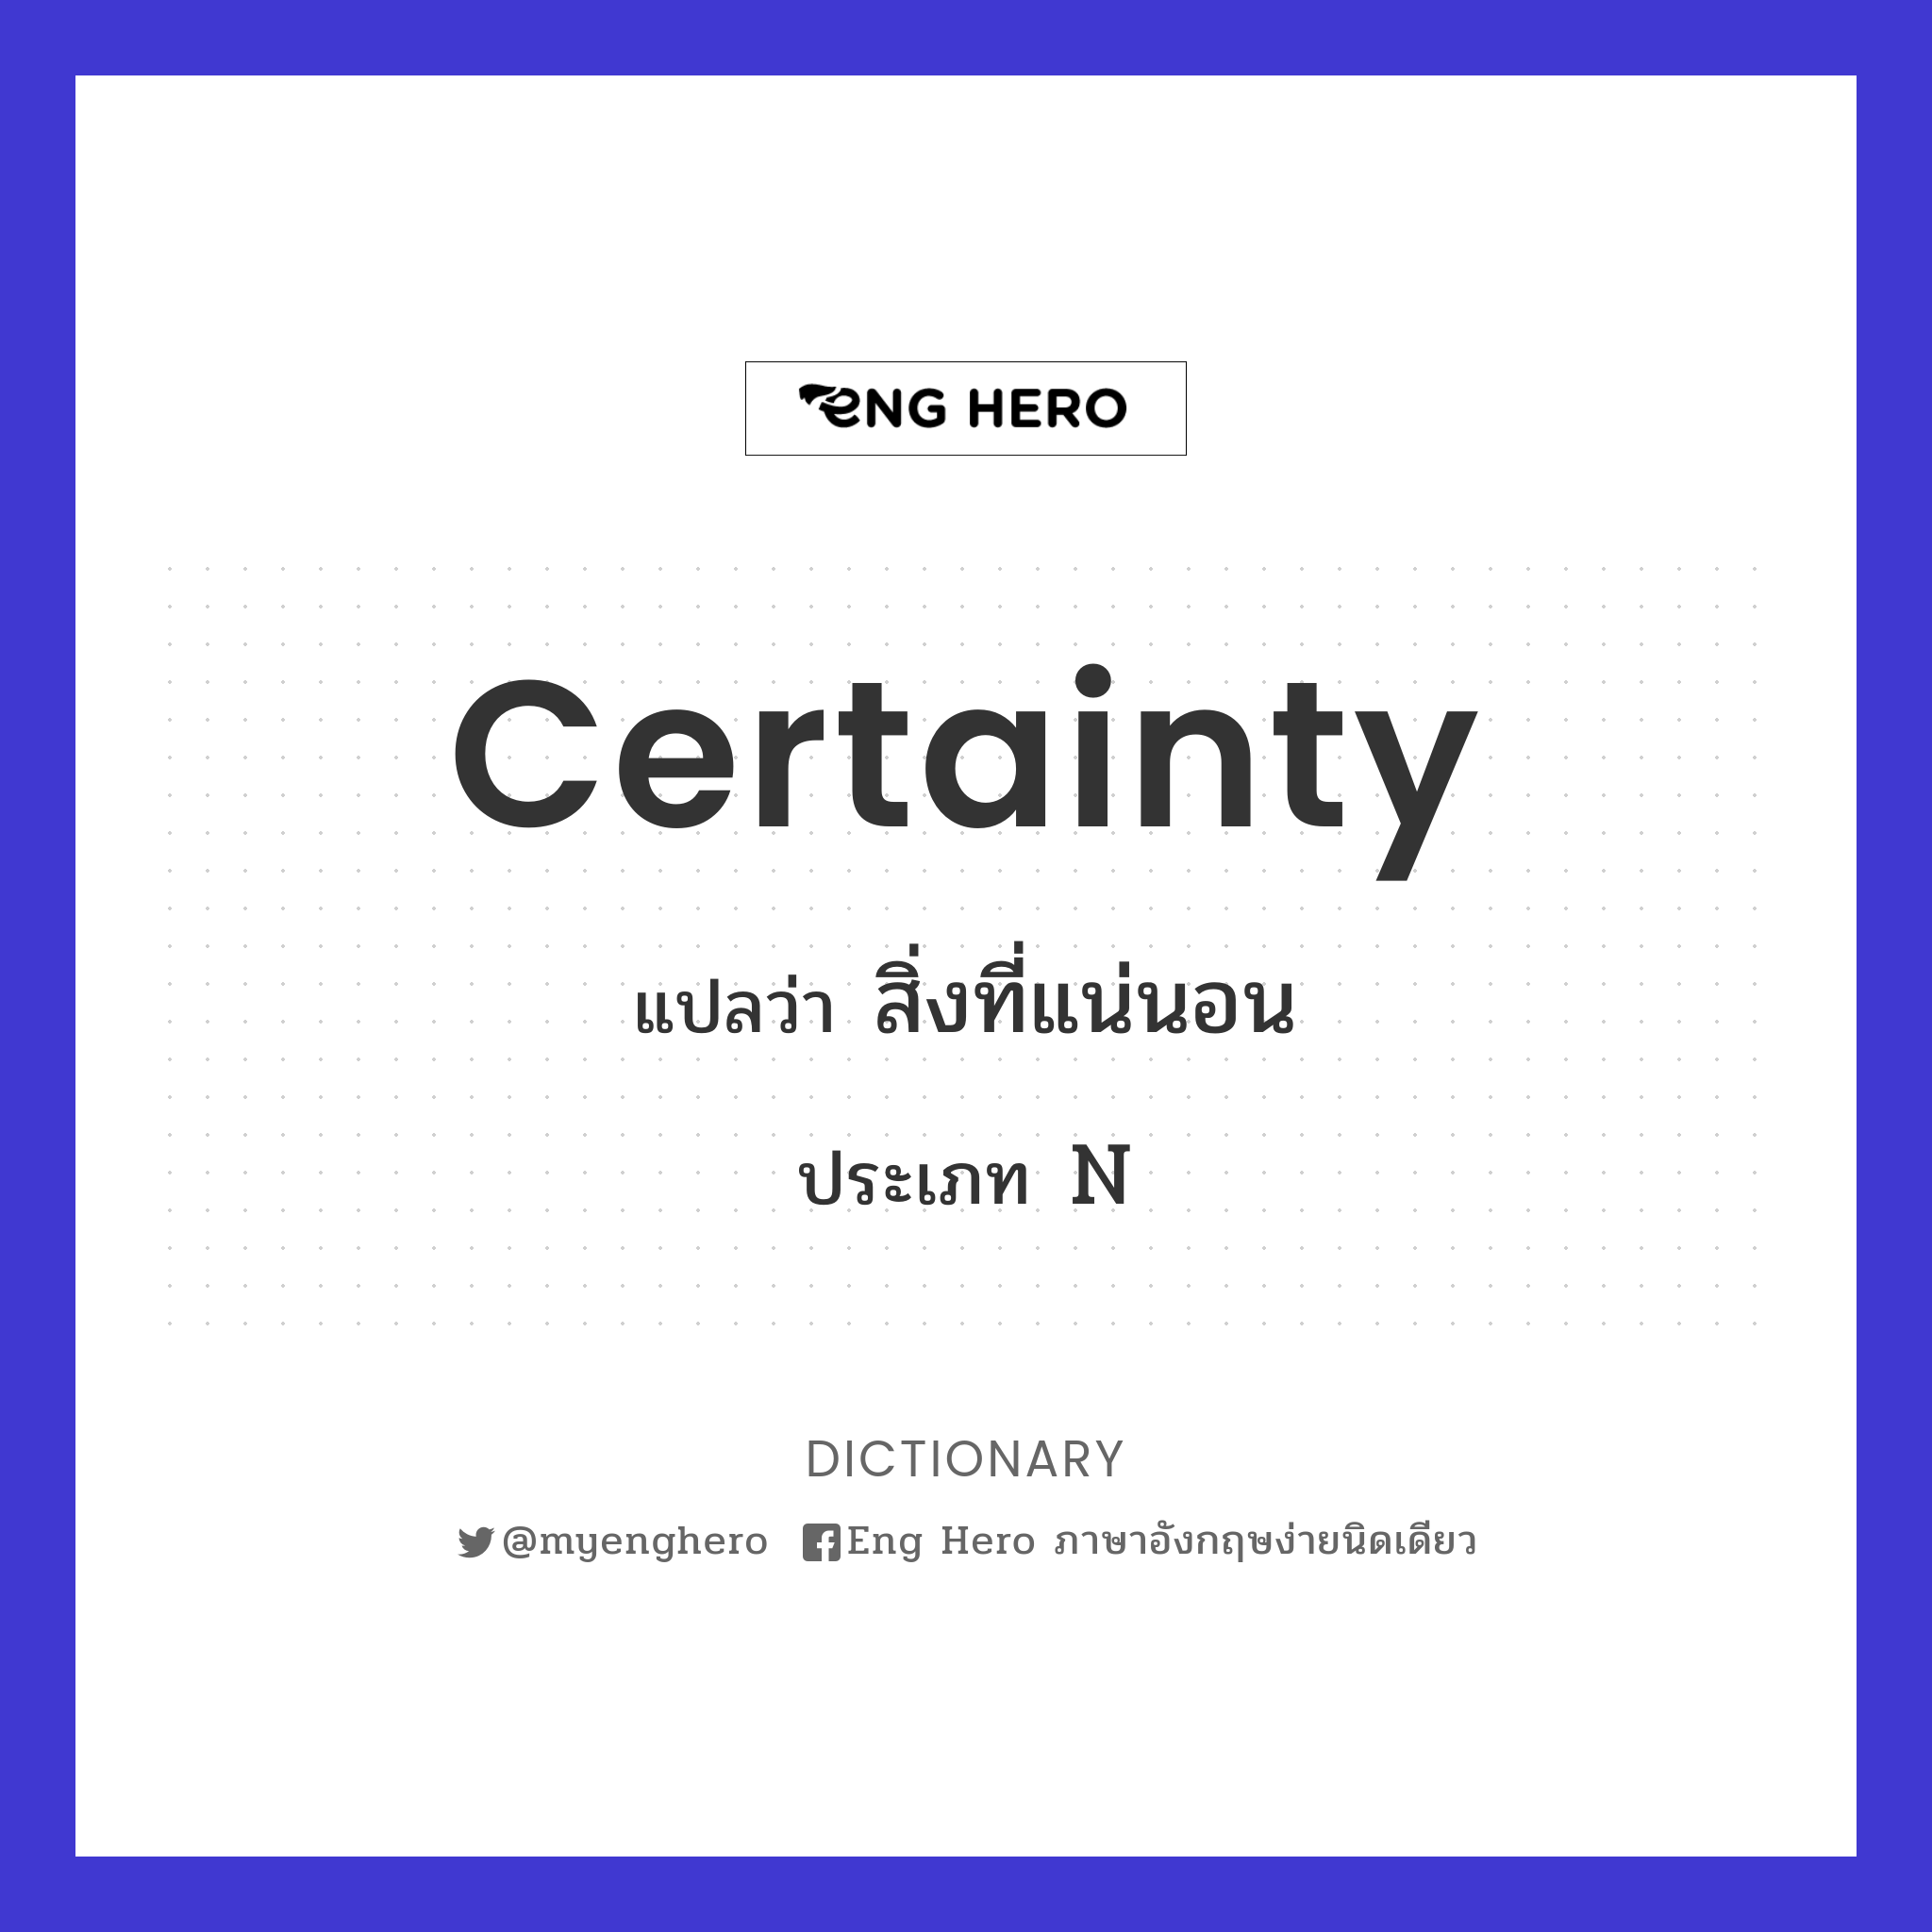 certainty